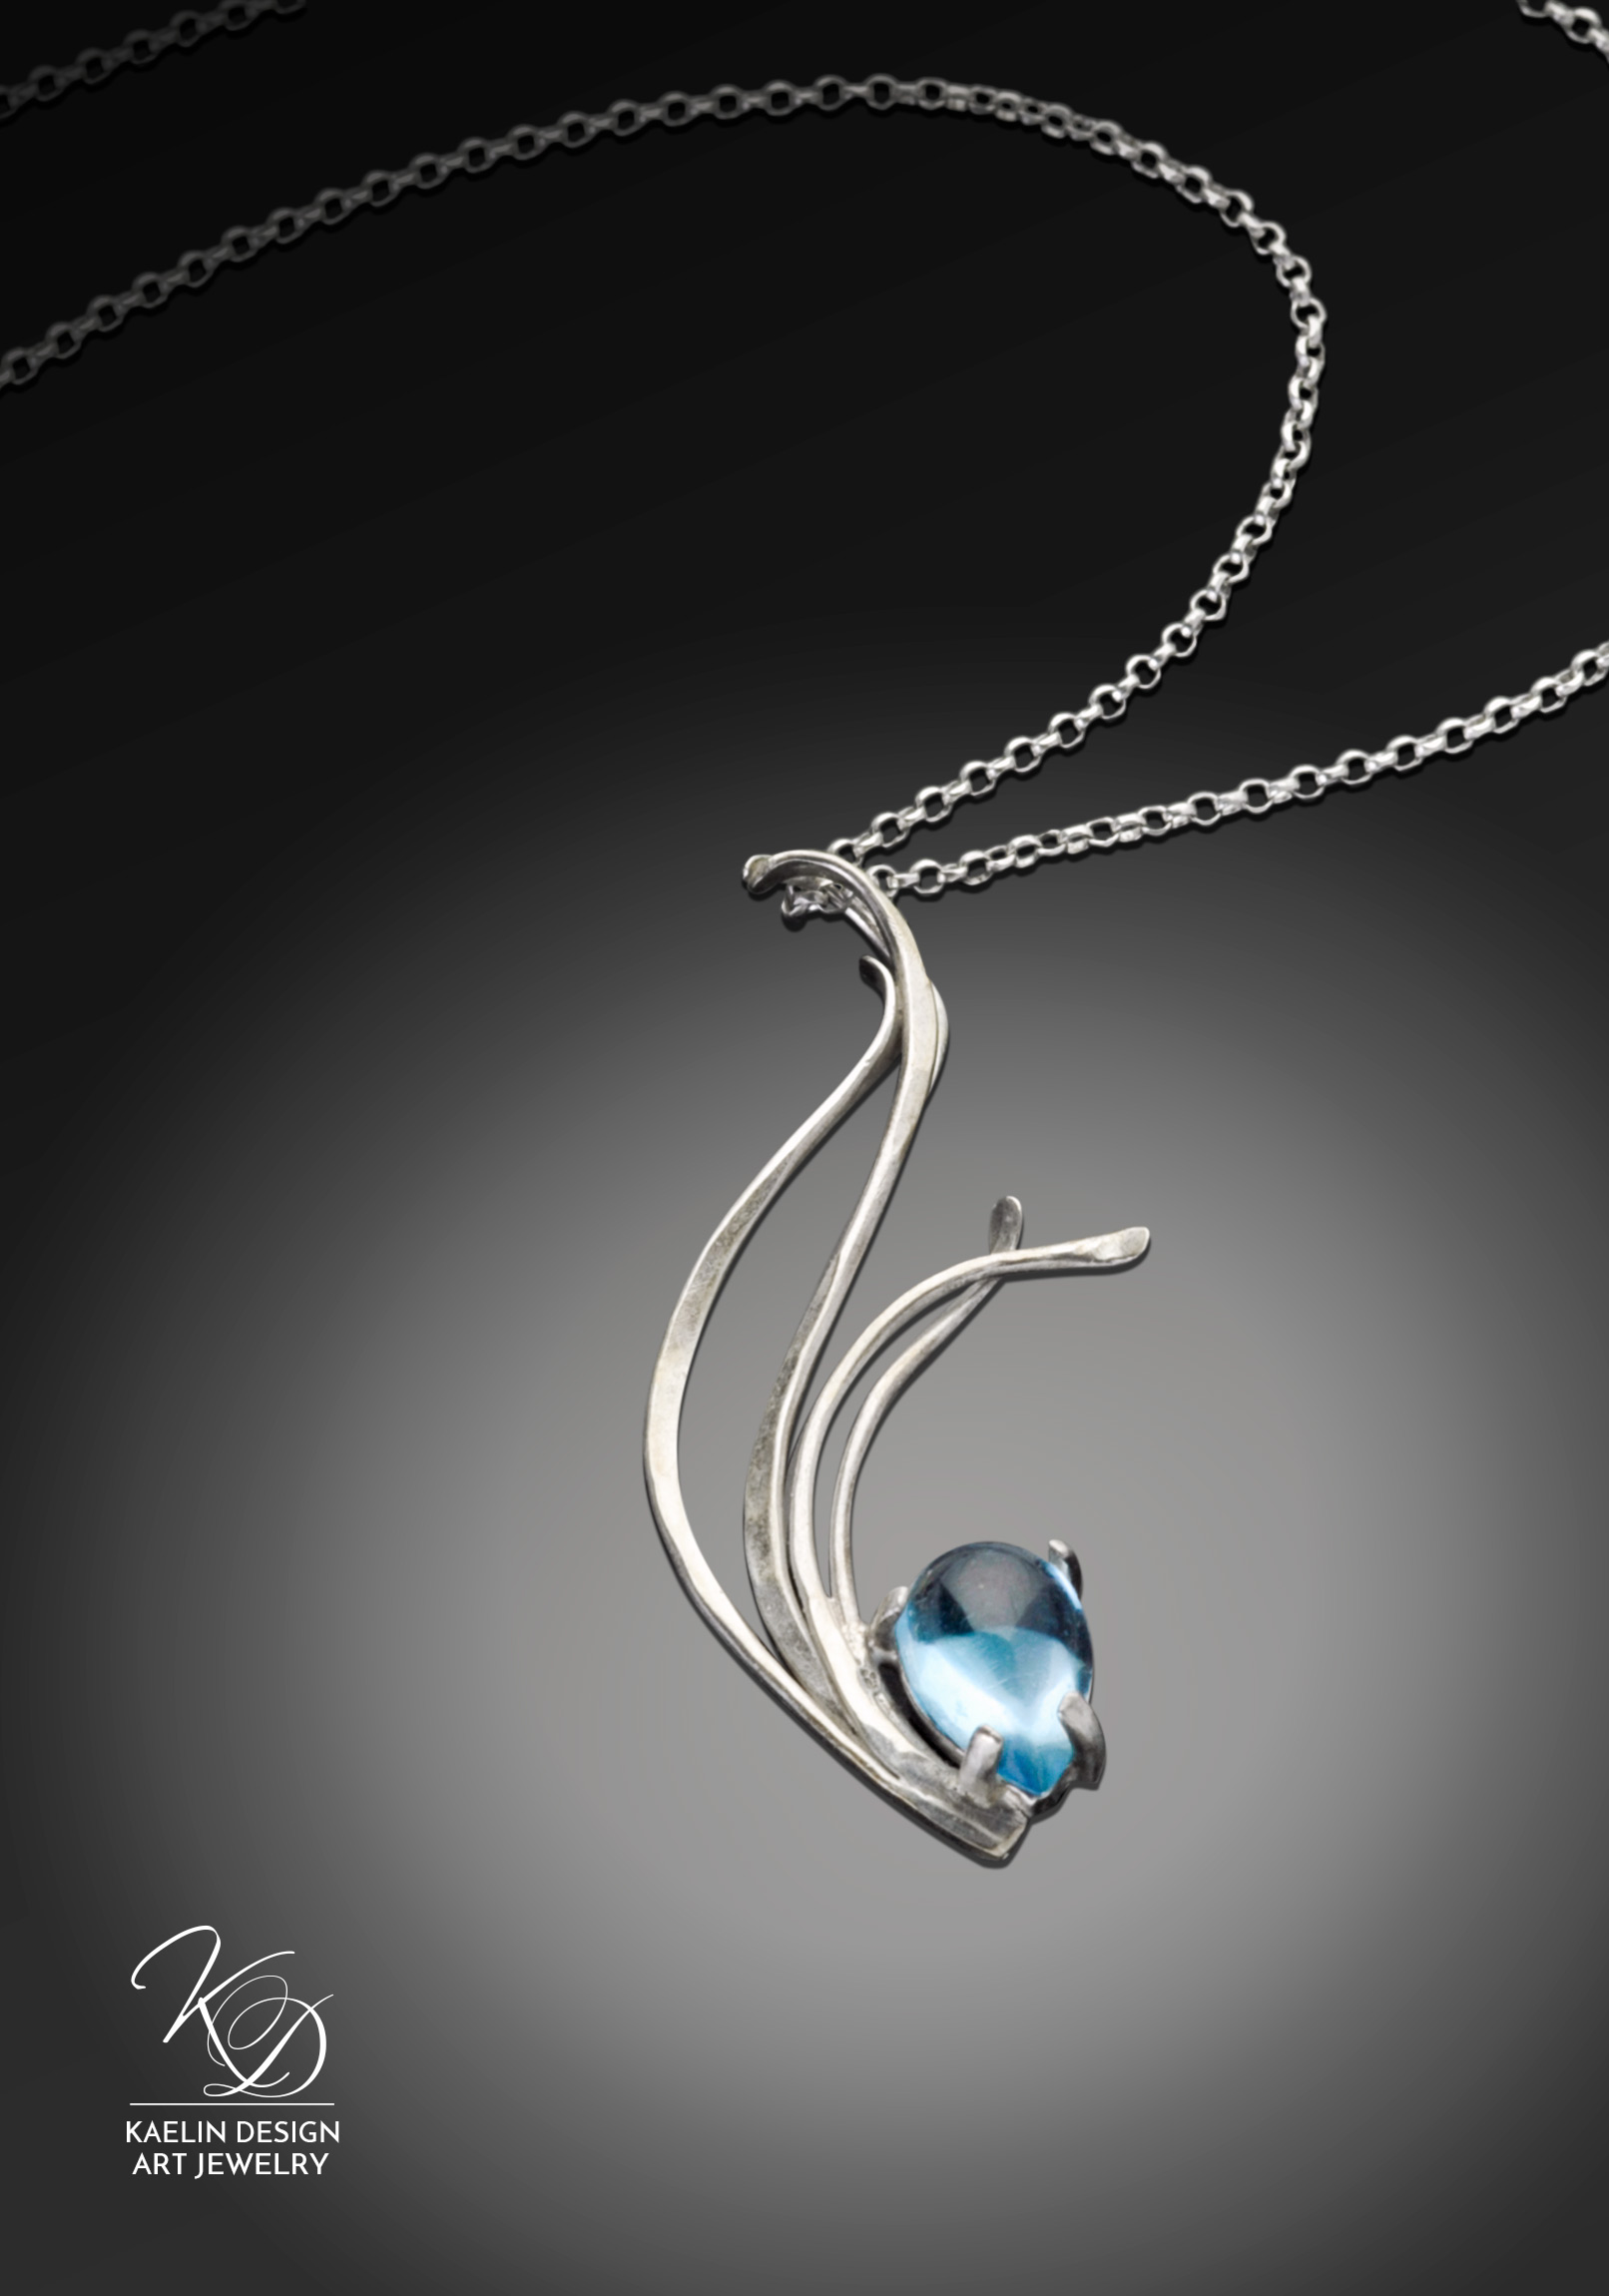 Flowing Waters Blue Topaz Art Jewelry Water Pendant by Kaelin Design